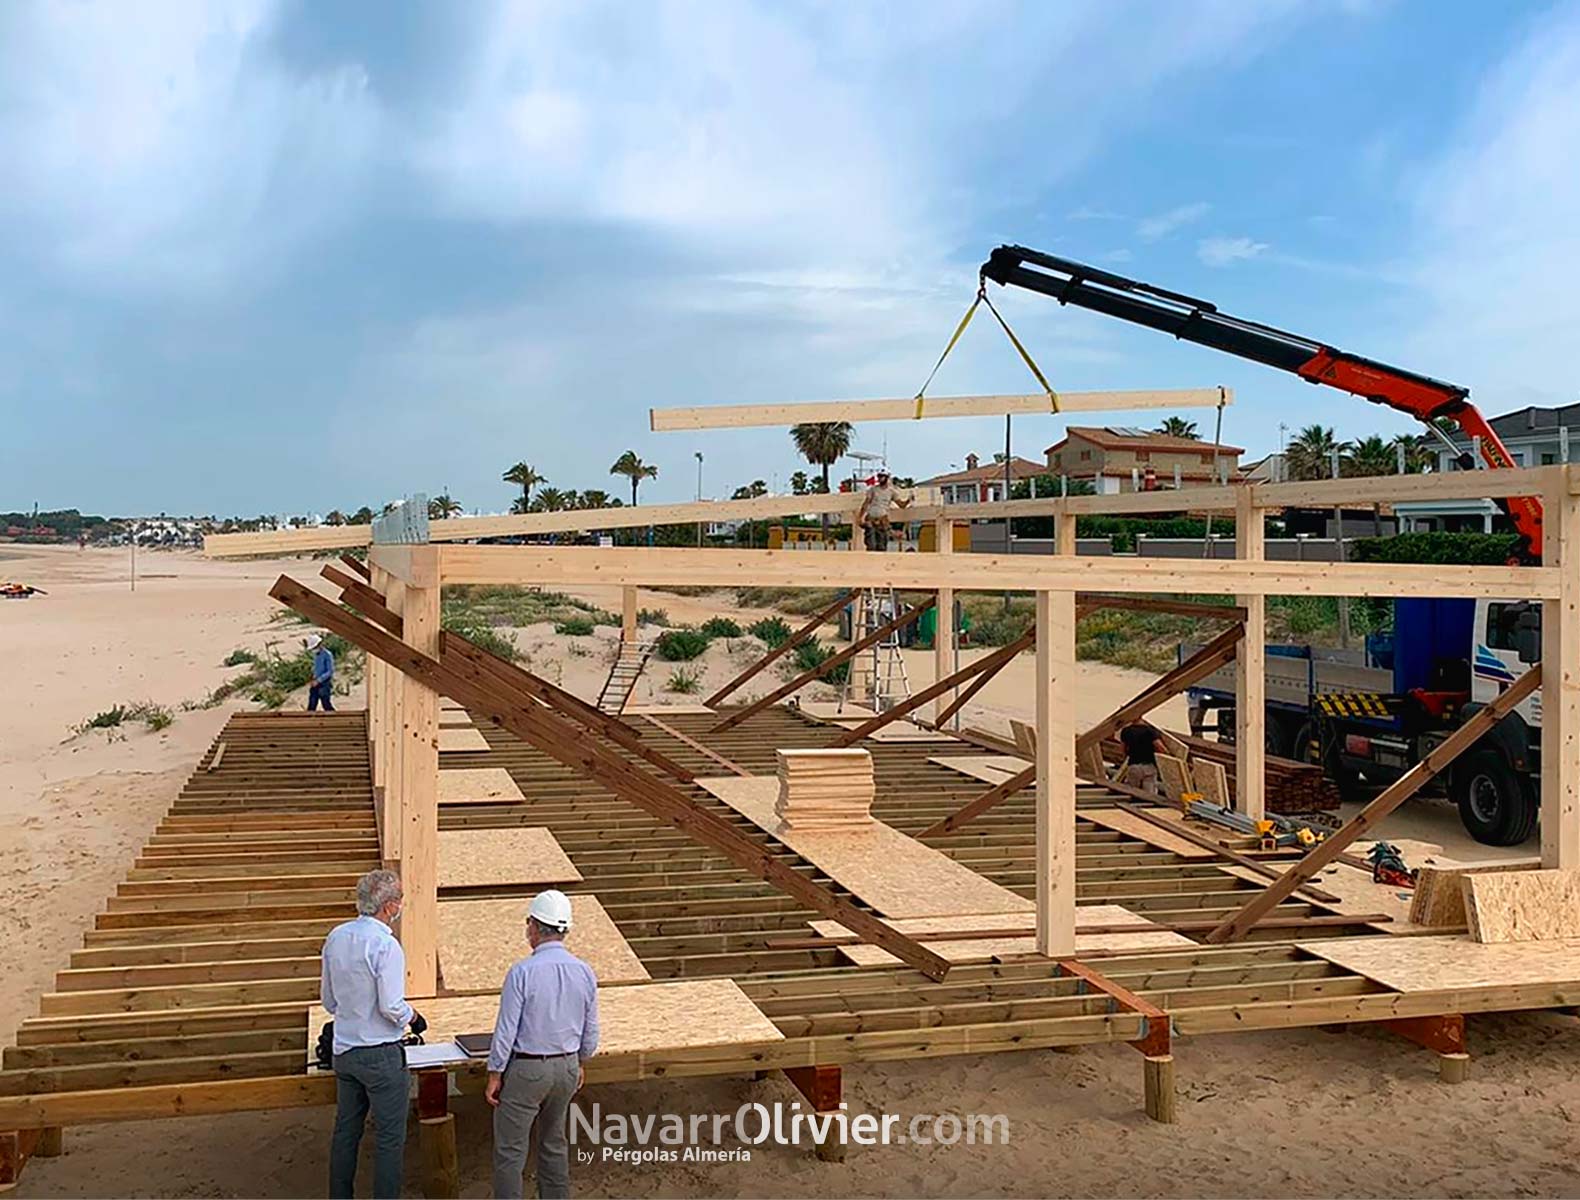 Montaje de estructura de madera sobre pilotes. Chiringuito Los Esteros, Chiclana, Cádiz